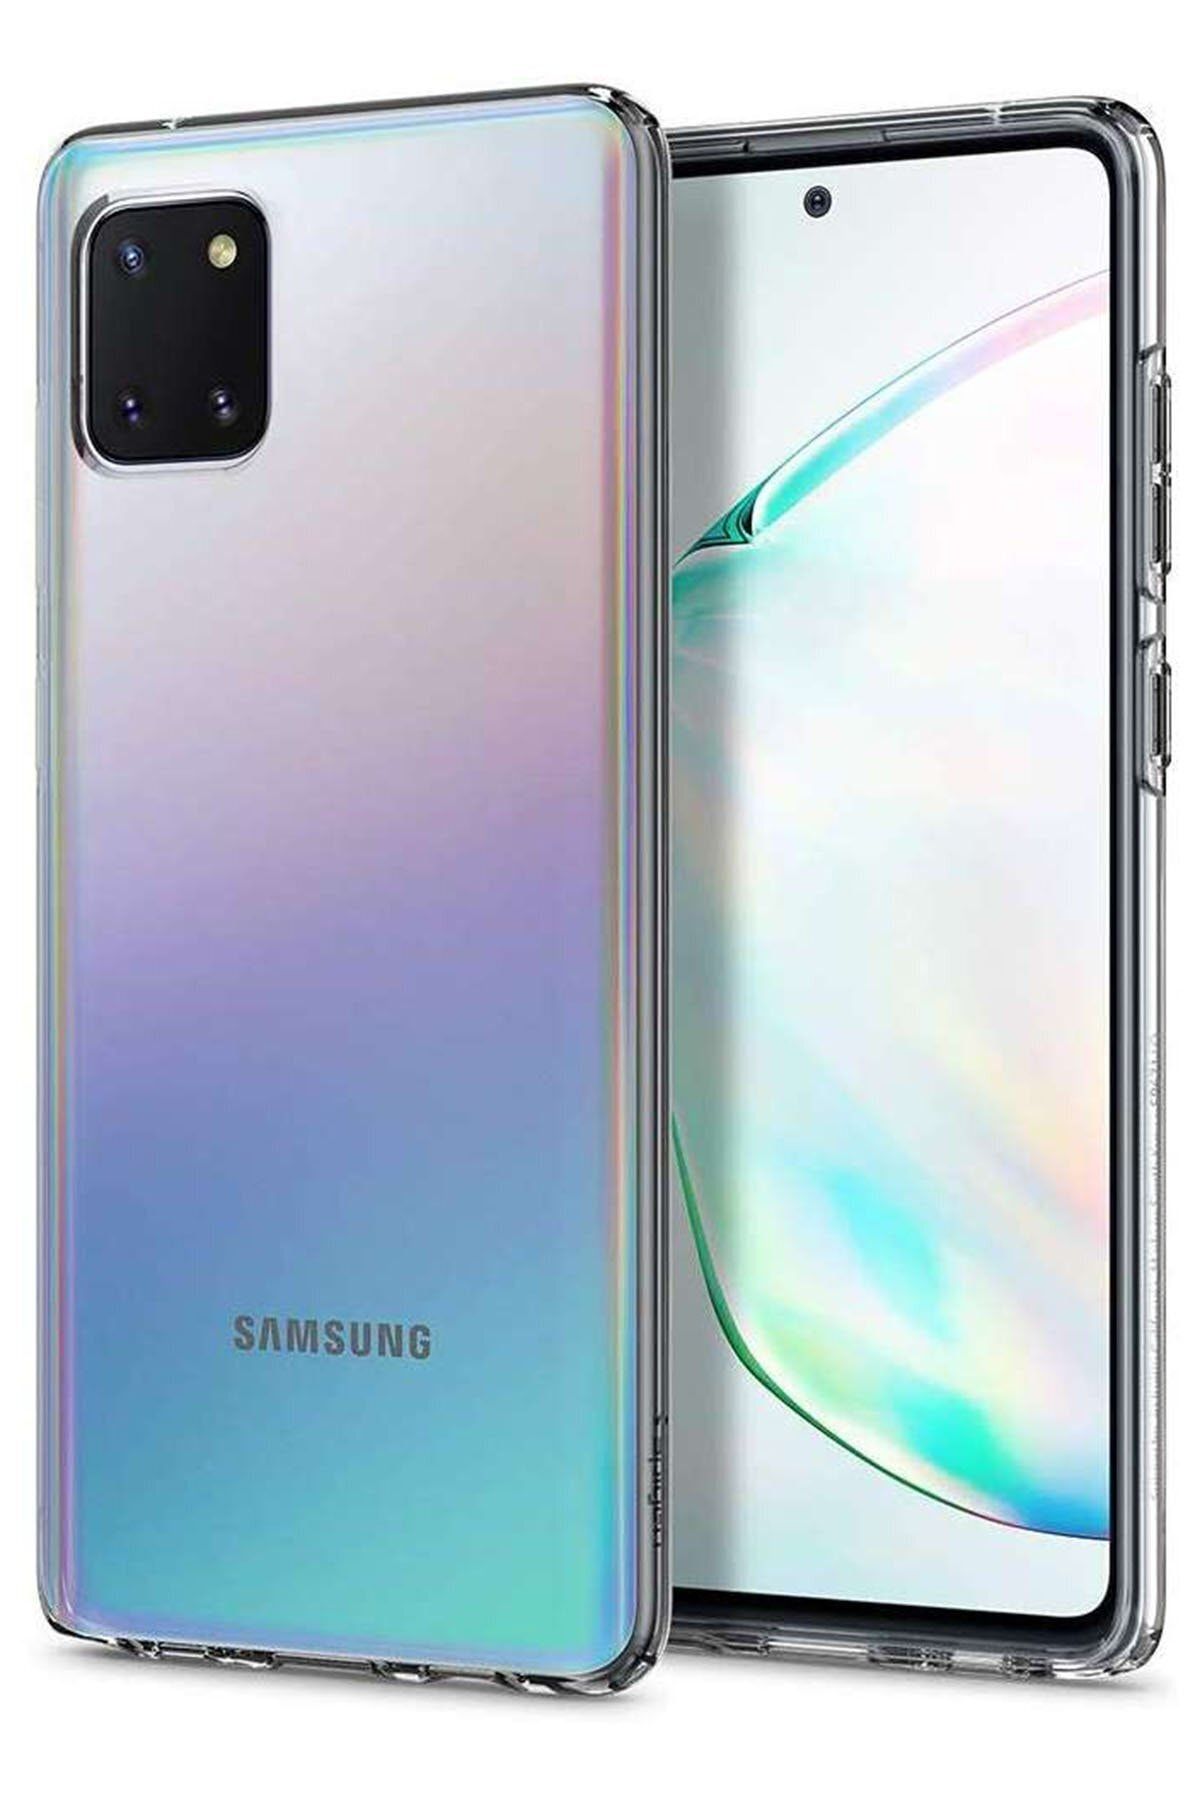 Samsung Ankacep Galaxy A81 / Note 10 Lite Kılıf Lüx Şeffaf Silikon